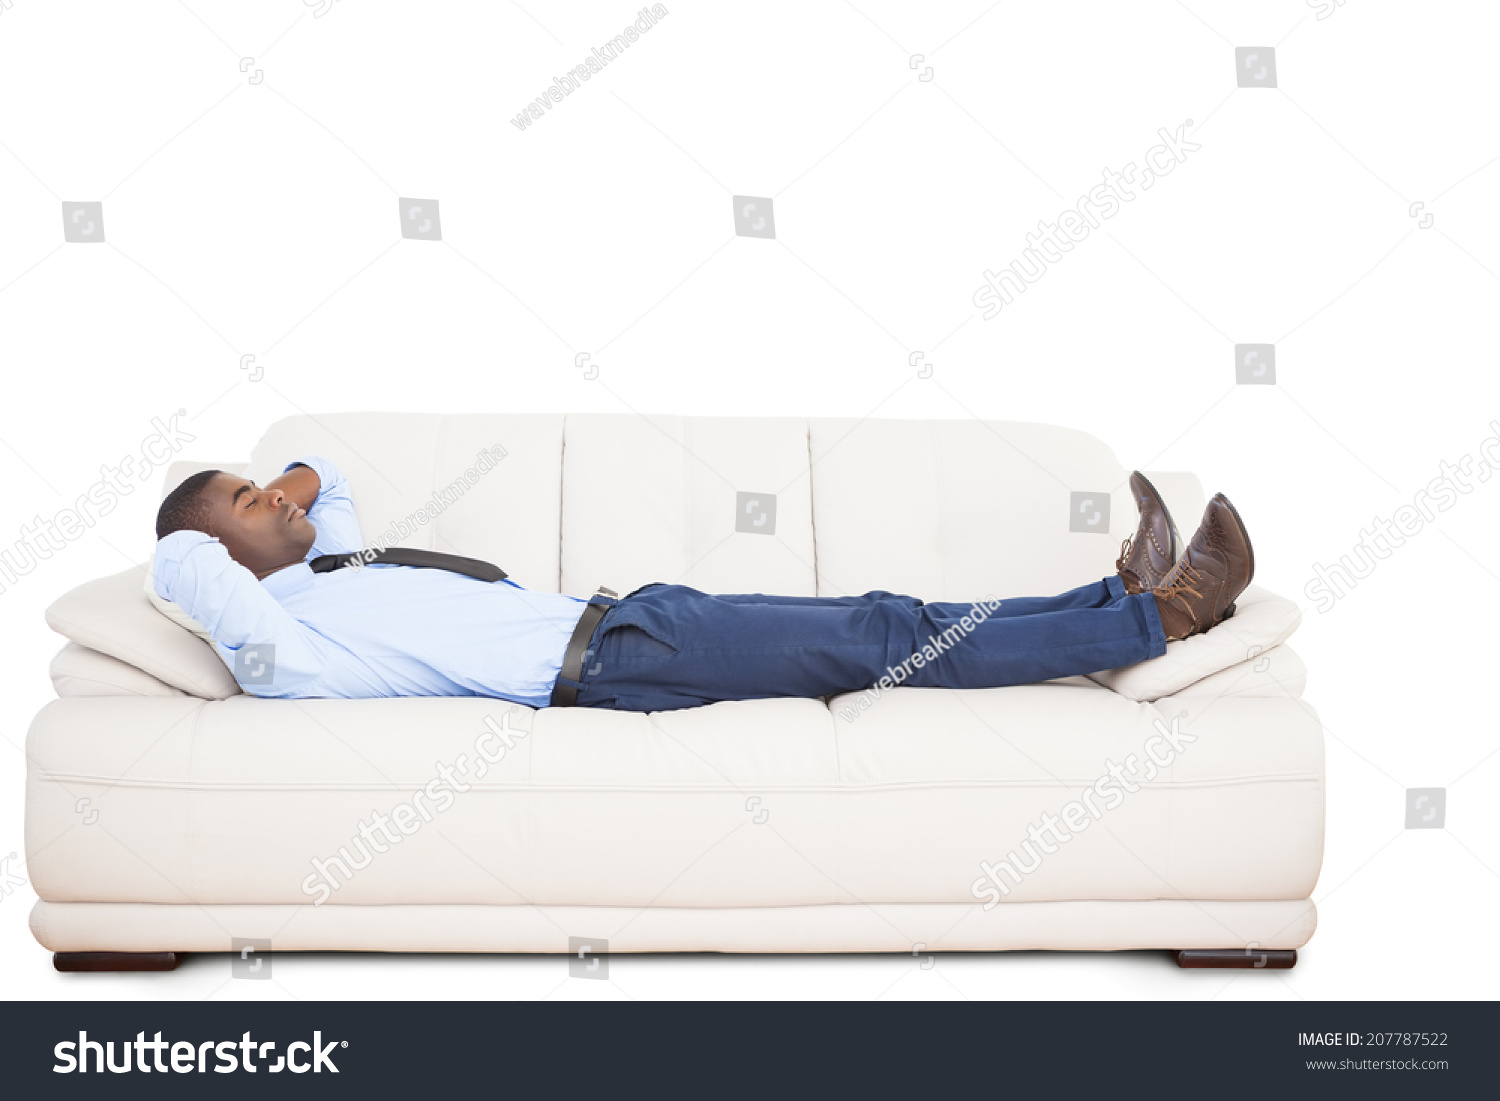 Лежал или лижал. Человек на диване. Человек лежит на диване. Пульт лежит на диване. Худой лежащий человек на диване.